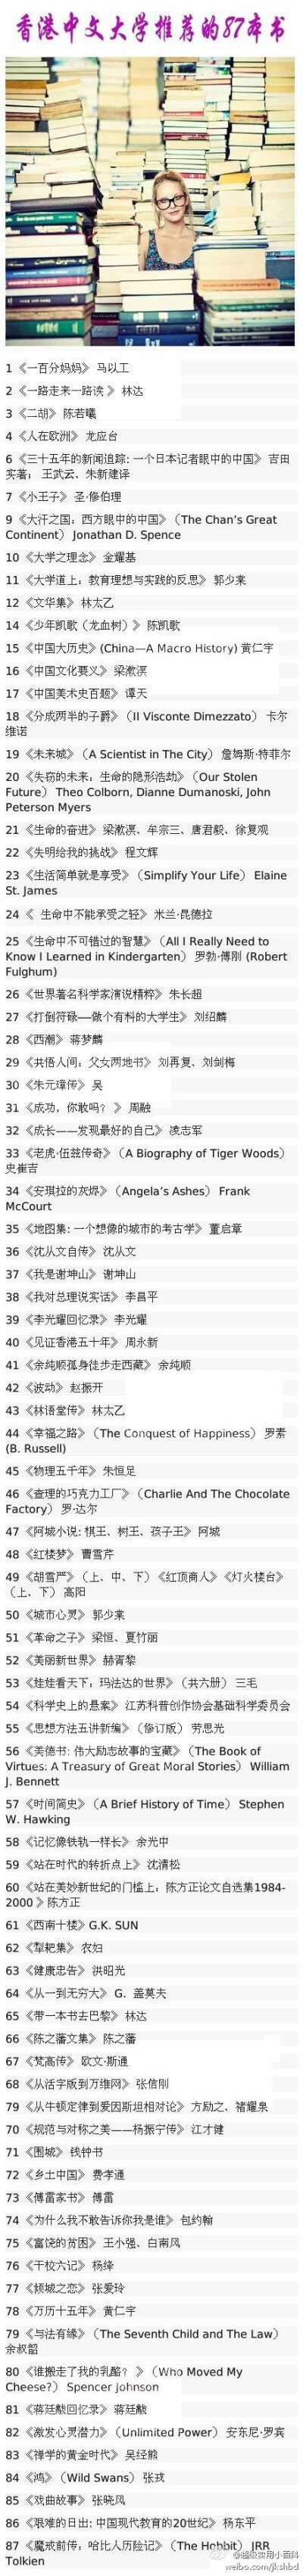 【香港中文大学推荐的书单】87本书，许多不但没读过，甚至没听过～静下心来，多给自己充充电吧！ 转